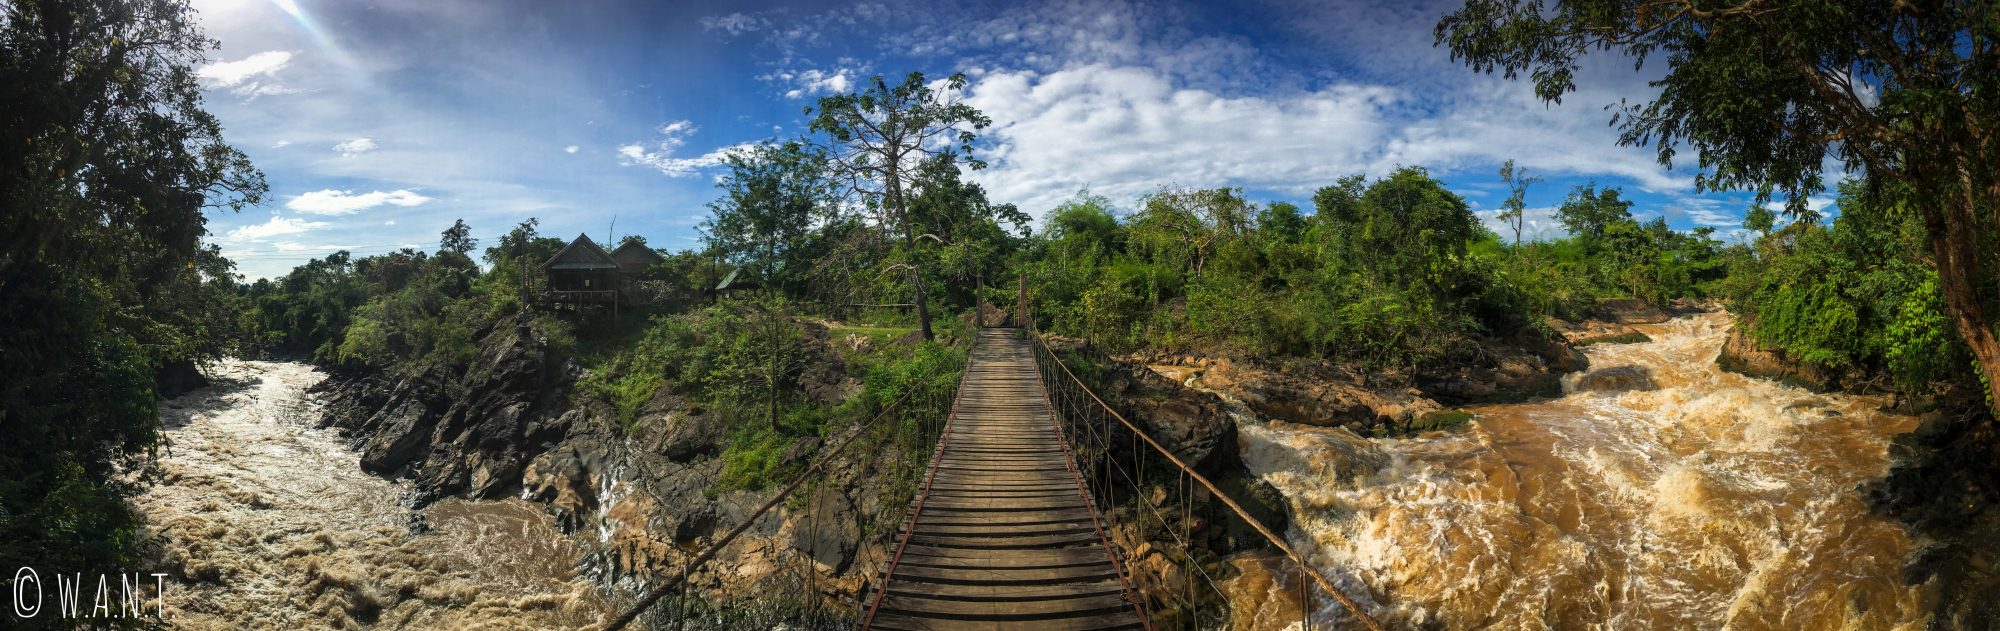 Panorama depuis le pont suspendu de l'île de Don Khon à l'extrême sud du Laos